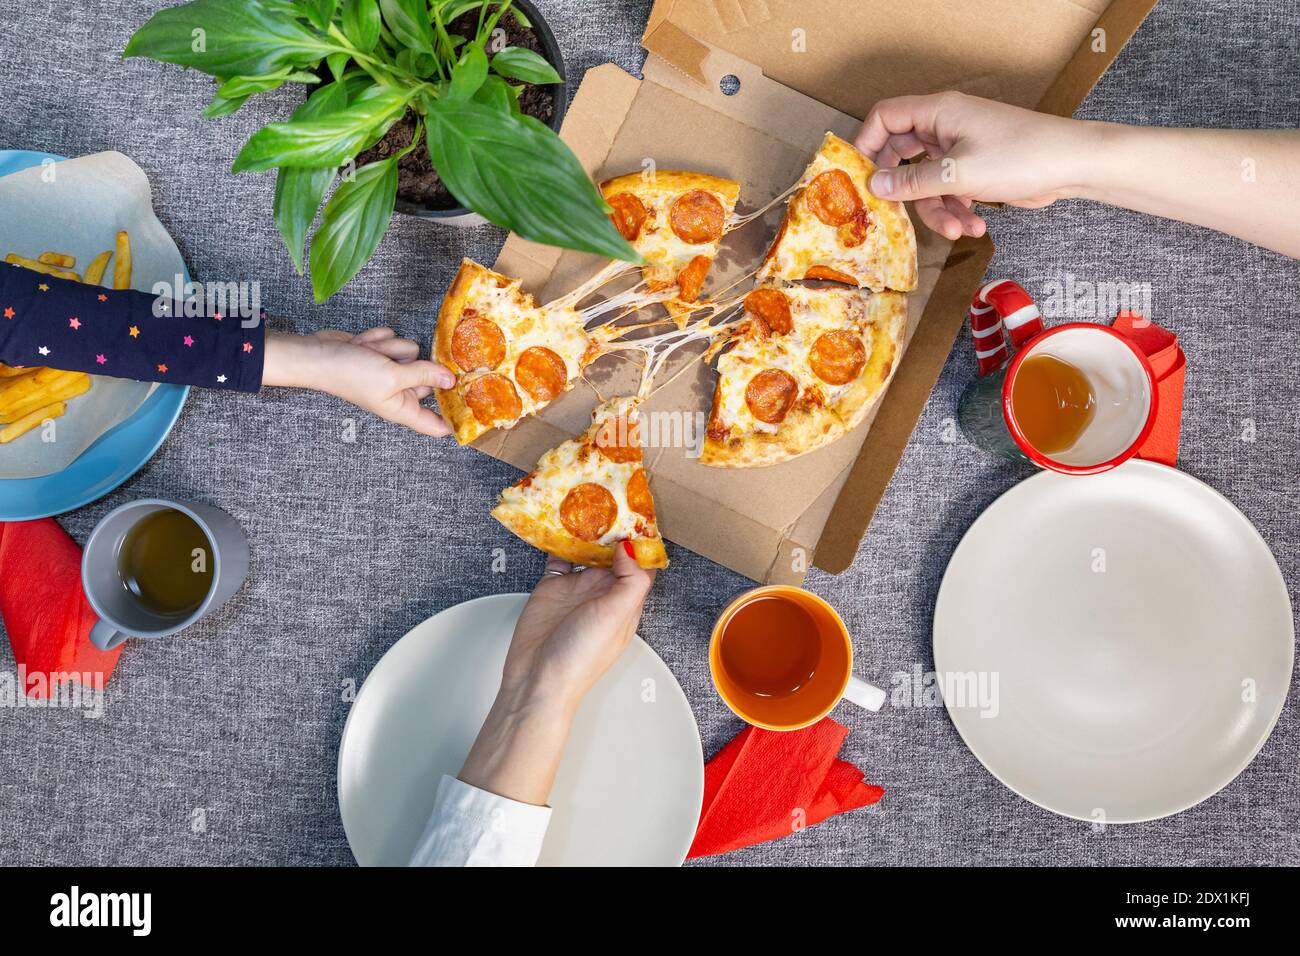 Déjeuner ou dîner en famille avec pizza au pepperoni, vue de dessus. Livraison de nourriture, pizzeria. Banque D'Images